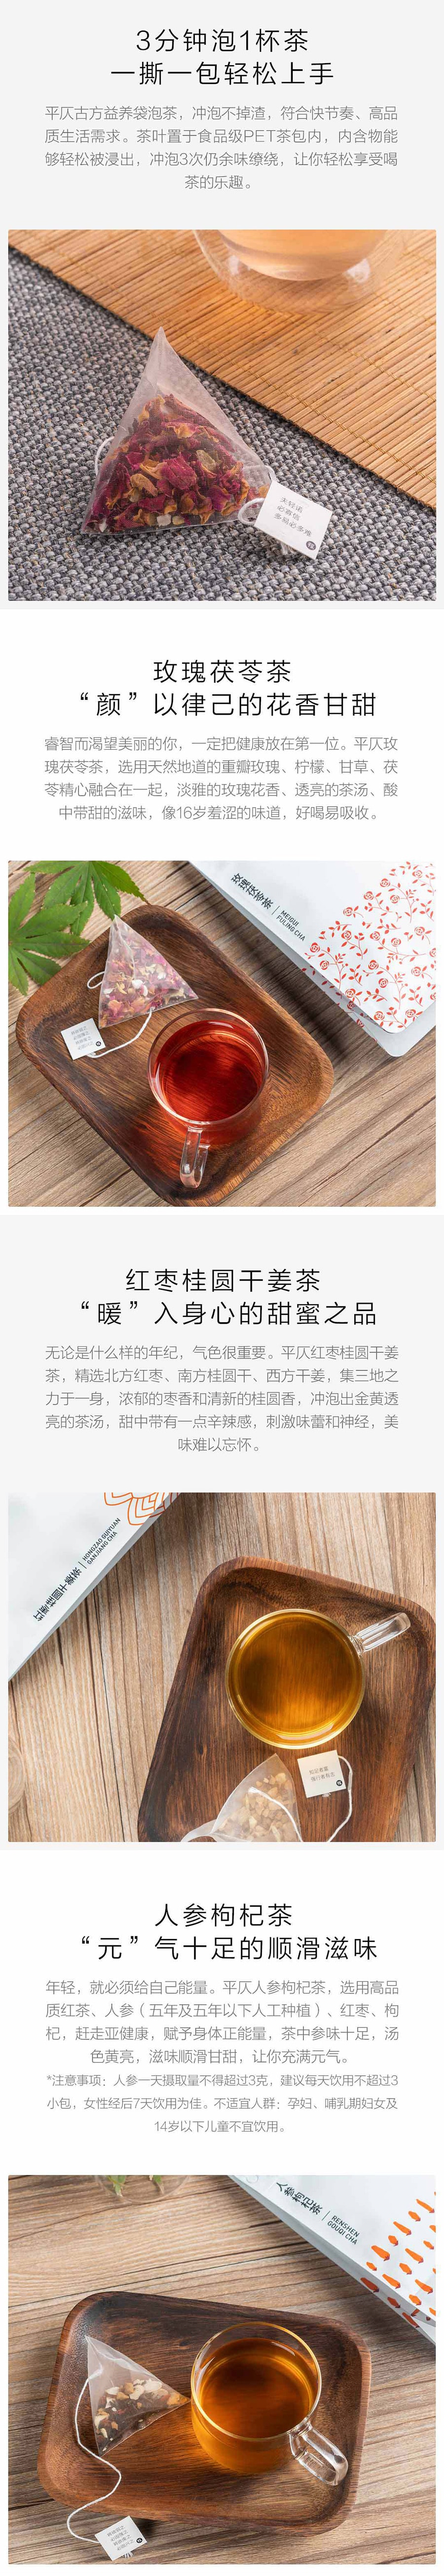 【中国直邮】小米有品红枣桂圆干姜茶 5g*20